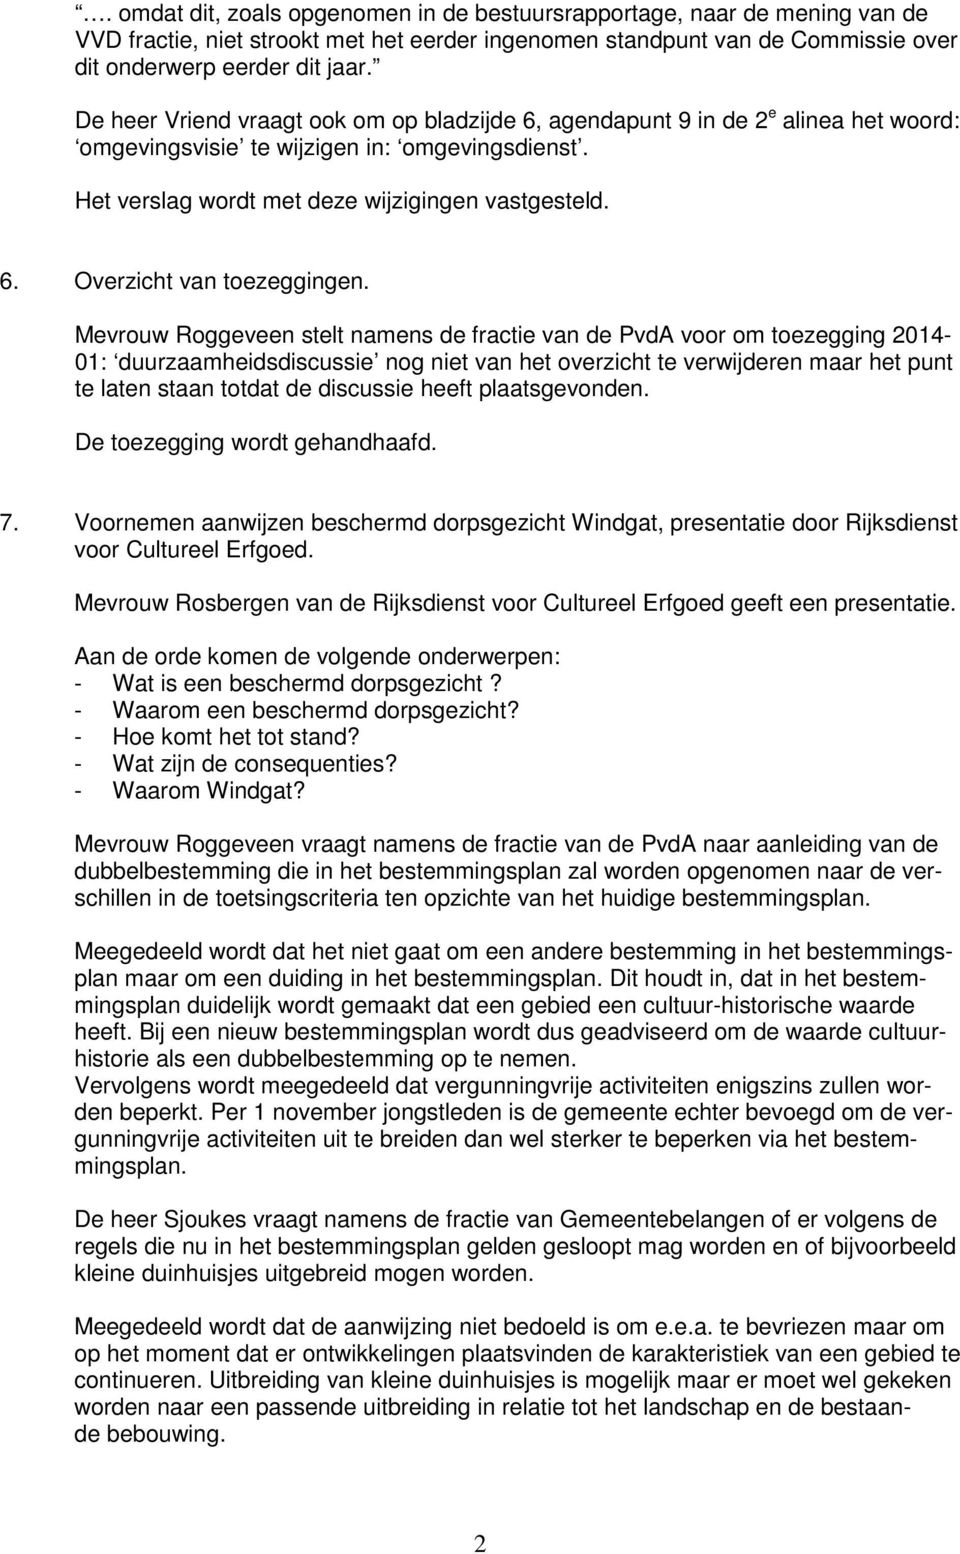 Mevrouw Roggeveen stelt namens de fractie van de PvdA voor om toezegging 2014-01: duurzaamheidsdiscussie nog niet van het overzicht te verwijderen maar het punt te laten staan totdat de discussie